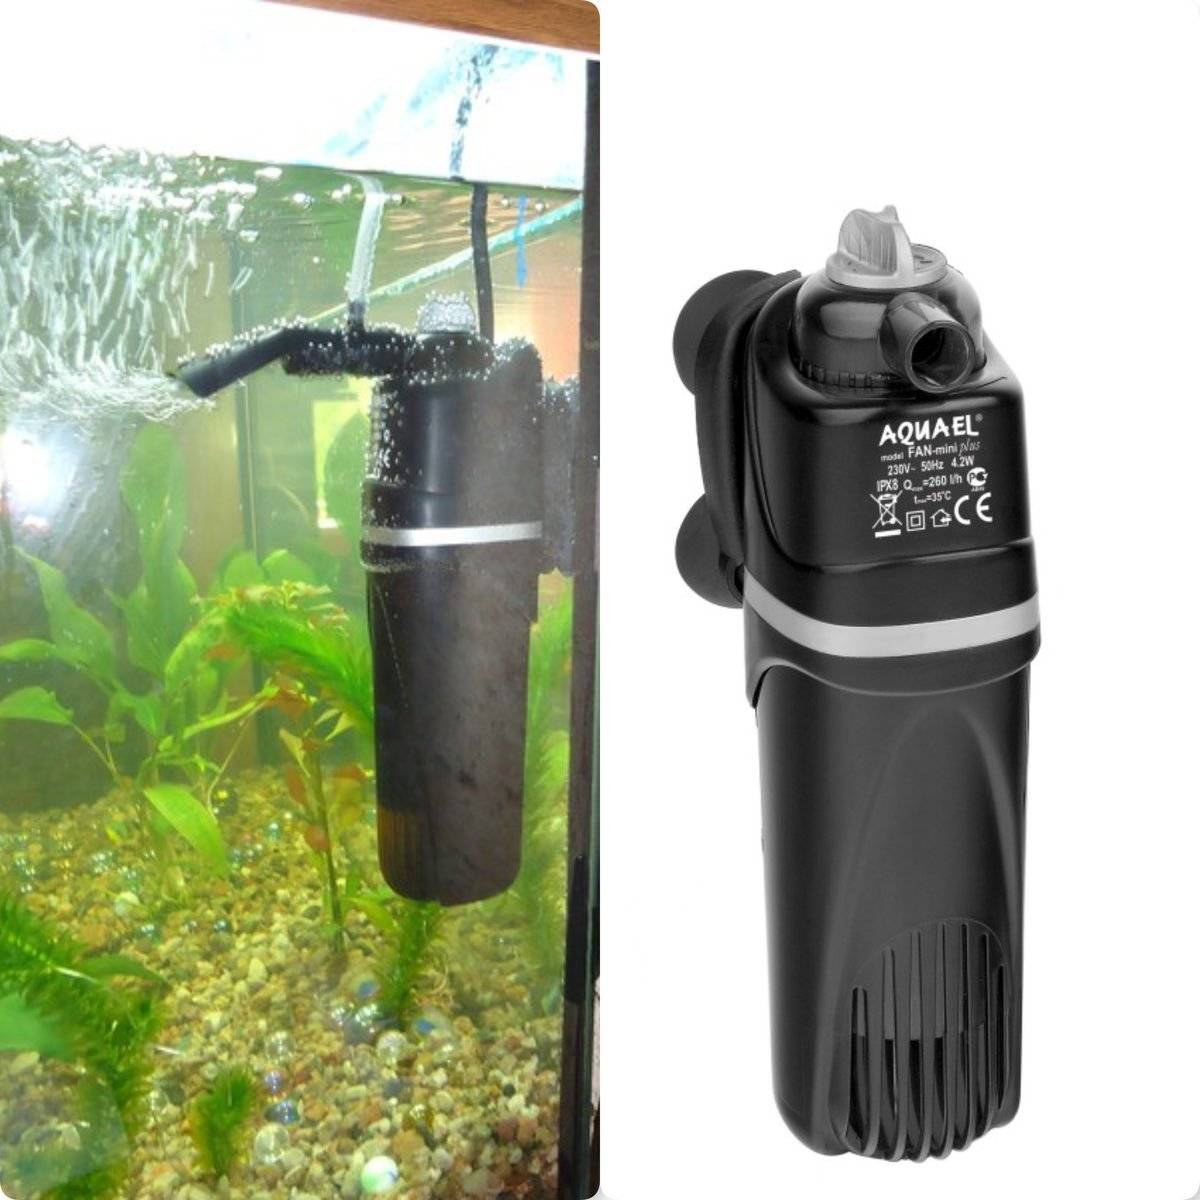 Как быстро и правильно установить фильтр для аквариума?